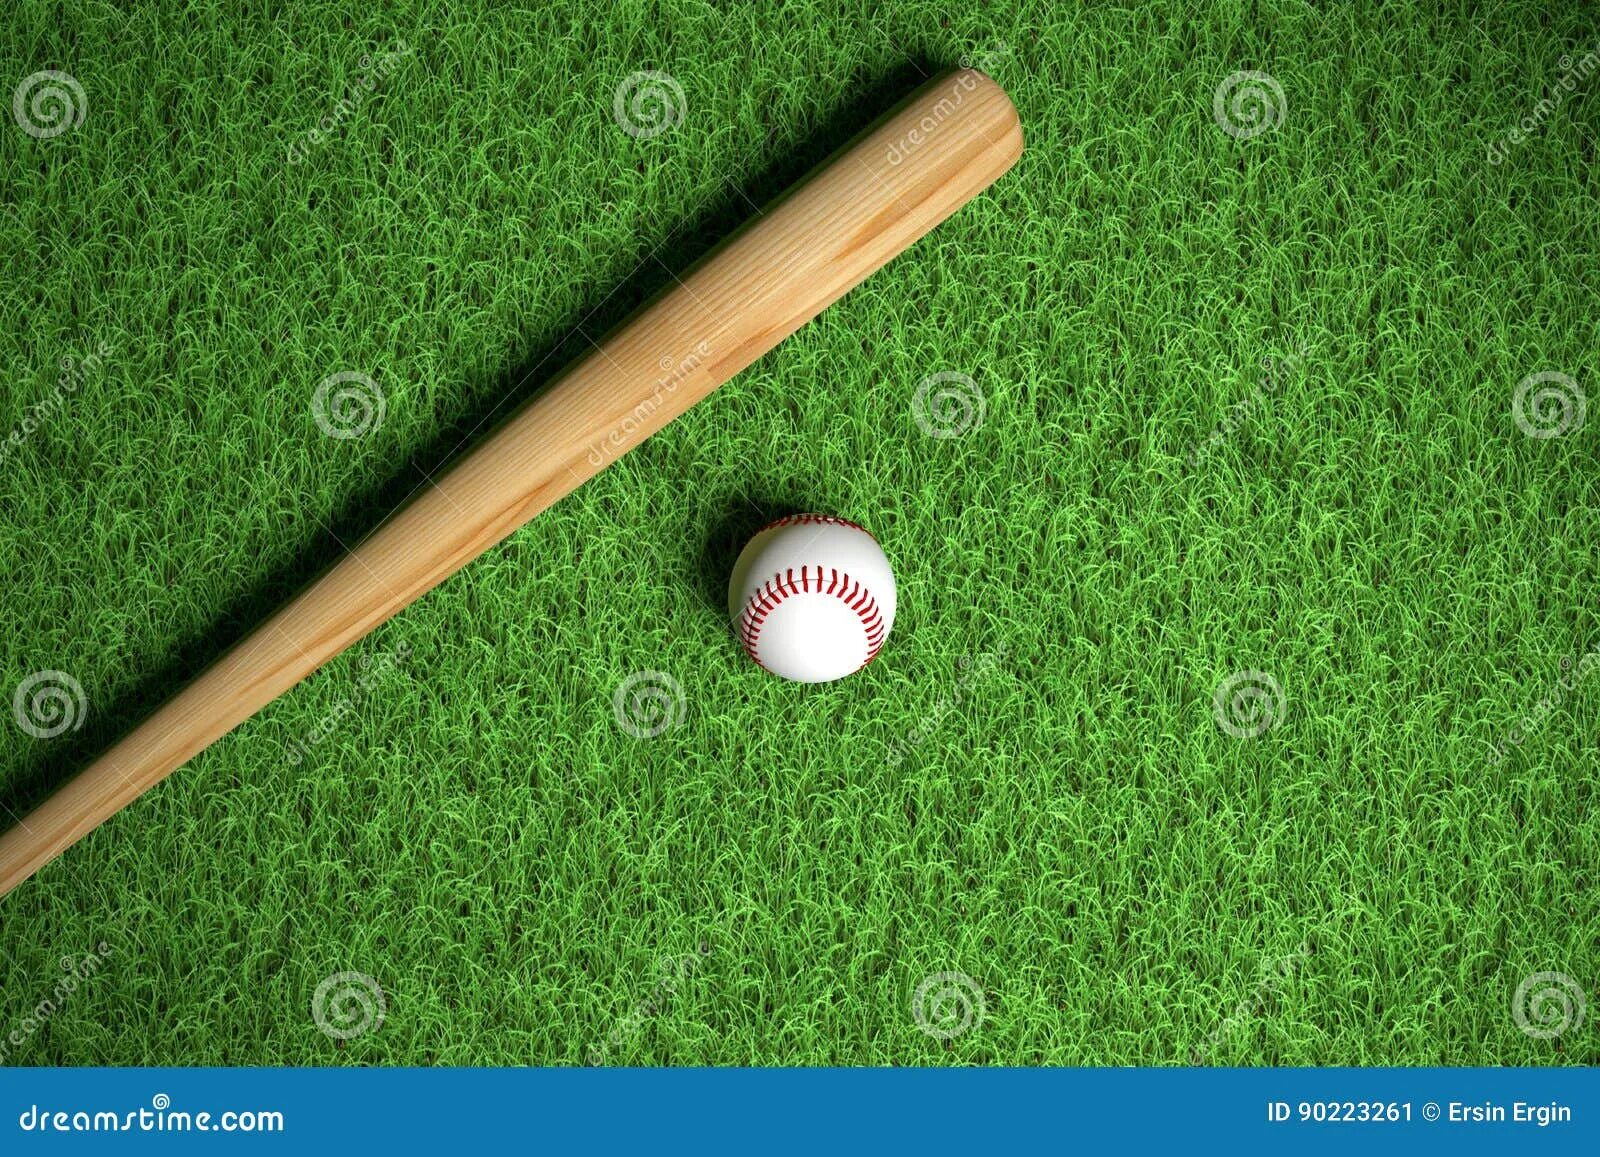 Сколько стоит бита и мяч. Бита и мячик стоят. Загадка про биту и мяч. Baseball bat on grass. Бита на траве.